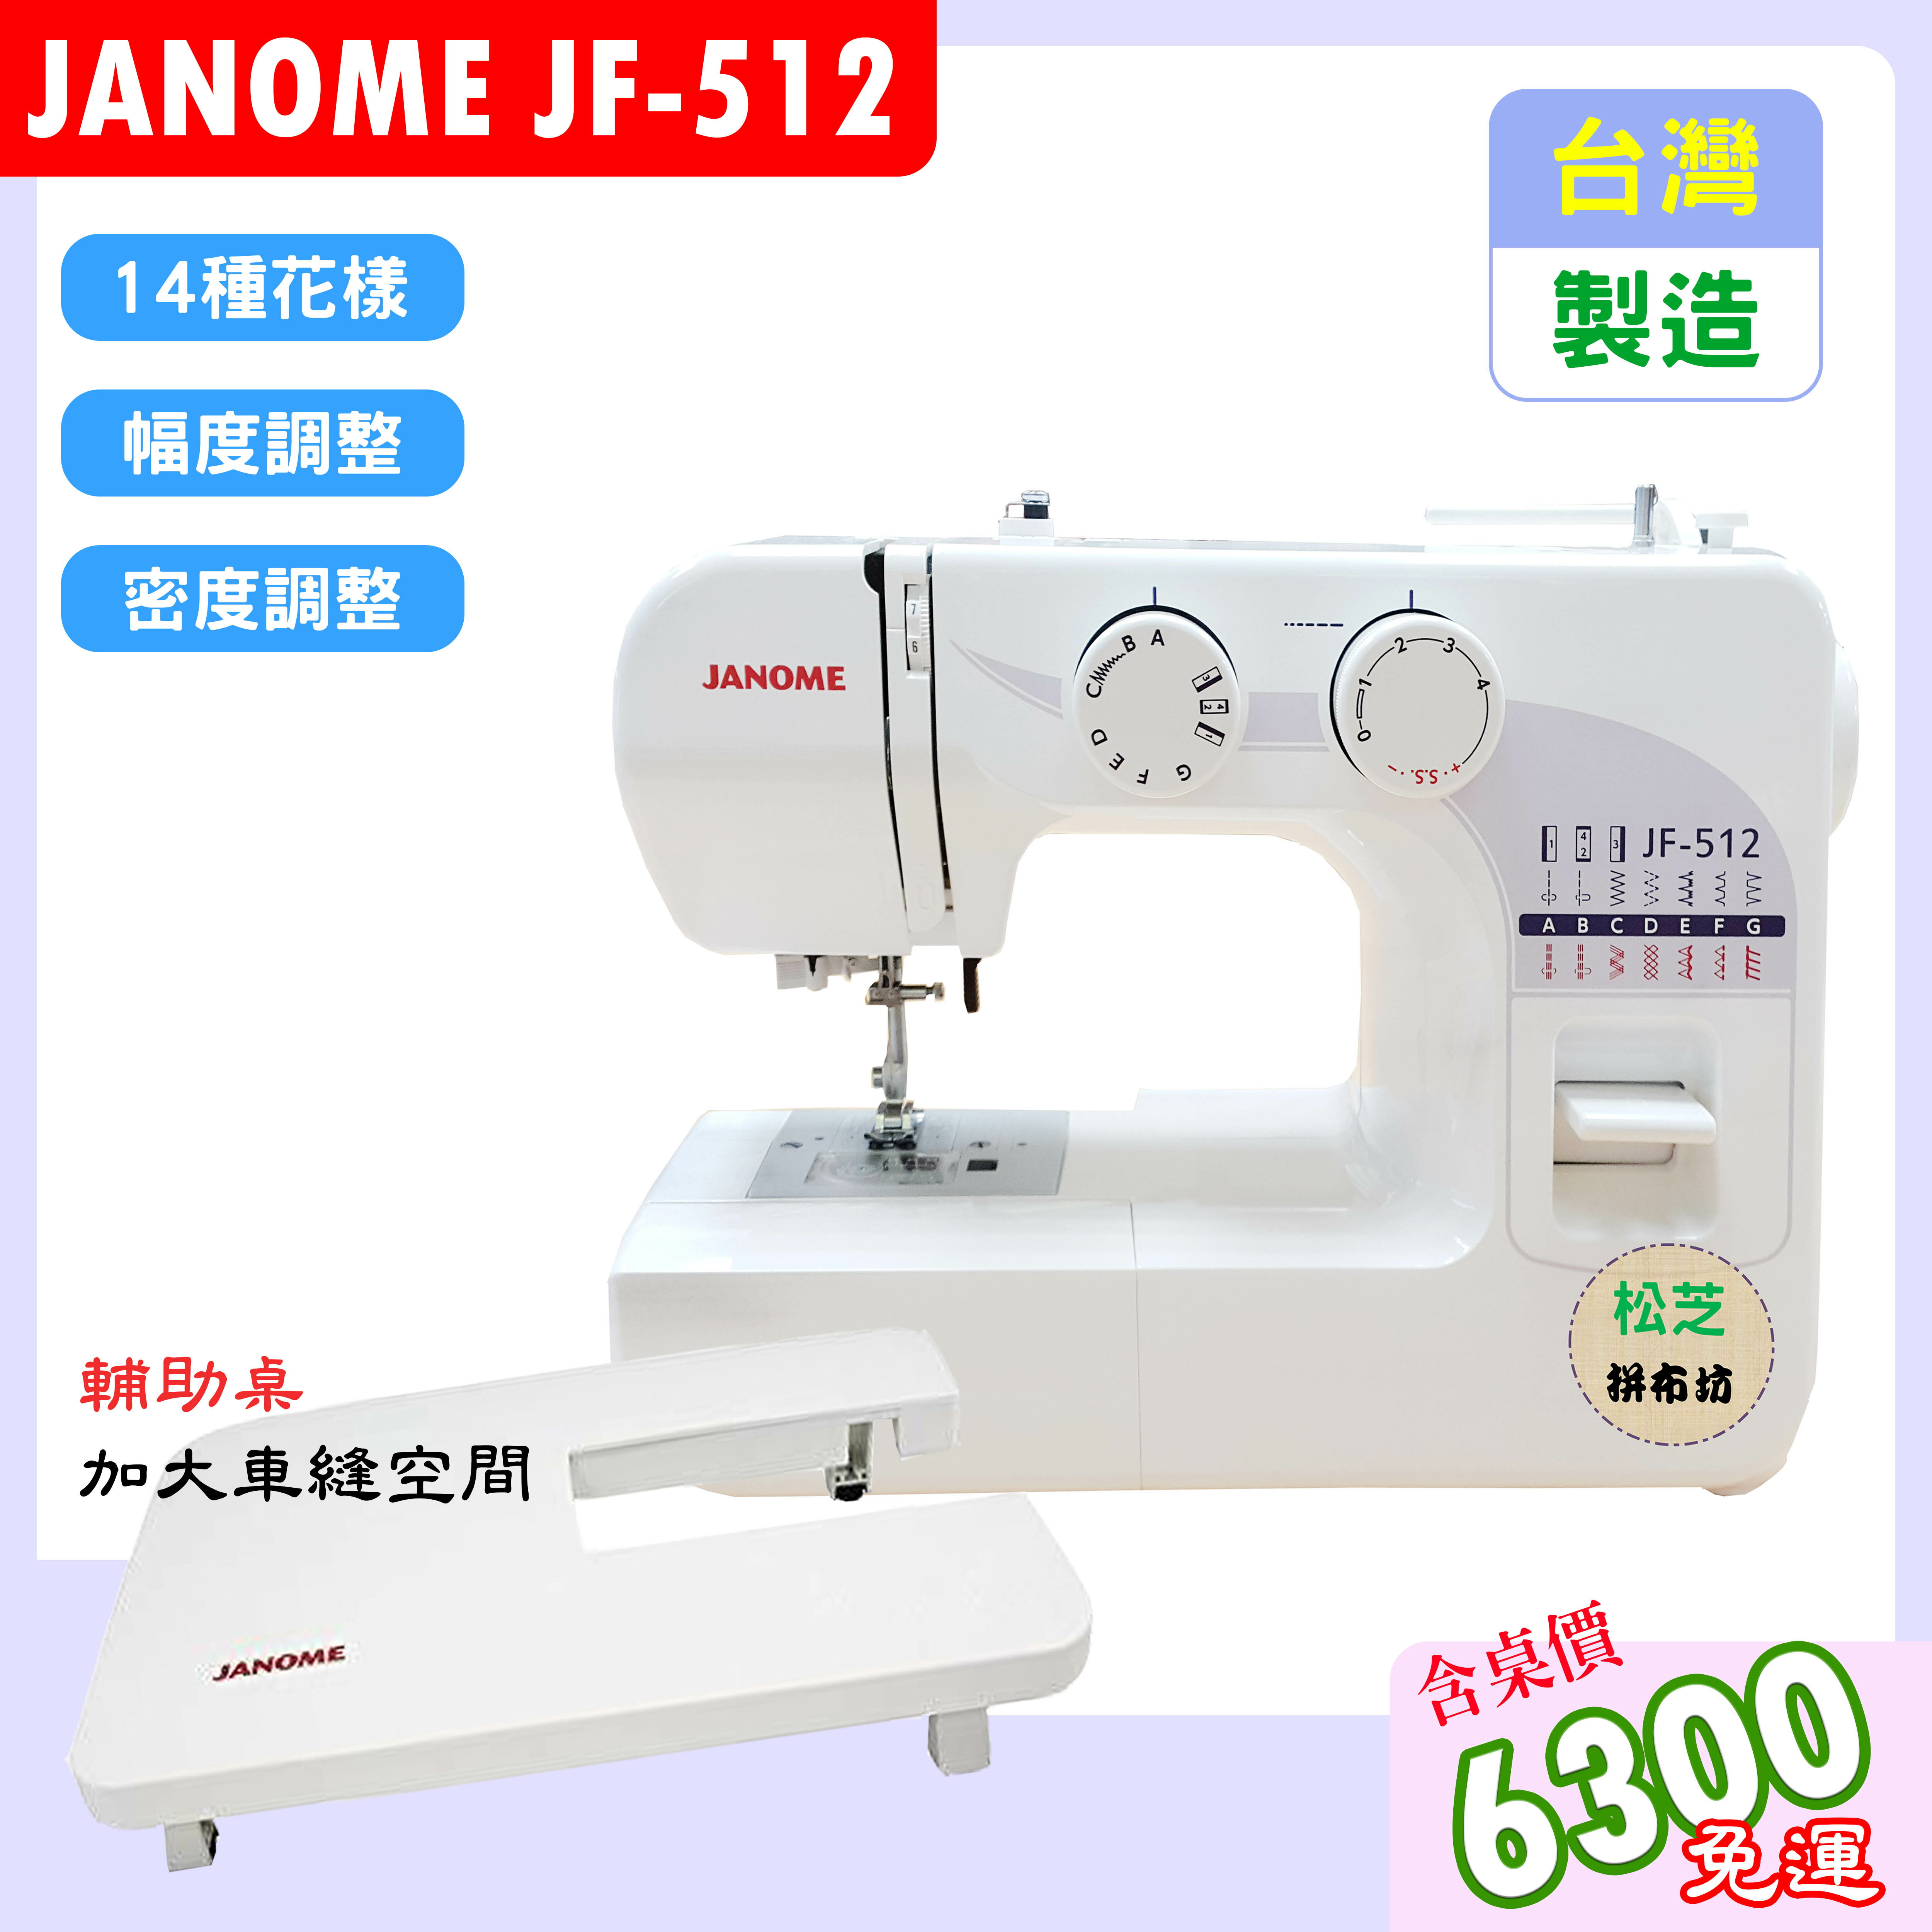 【松芝拼布坊】車樂美 JANOME JF-512 全迴轉 機械式縫紉機 幅度、密度 輔助桌方案